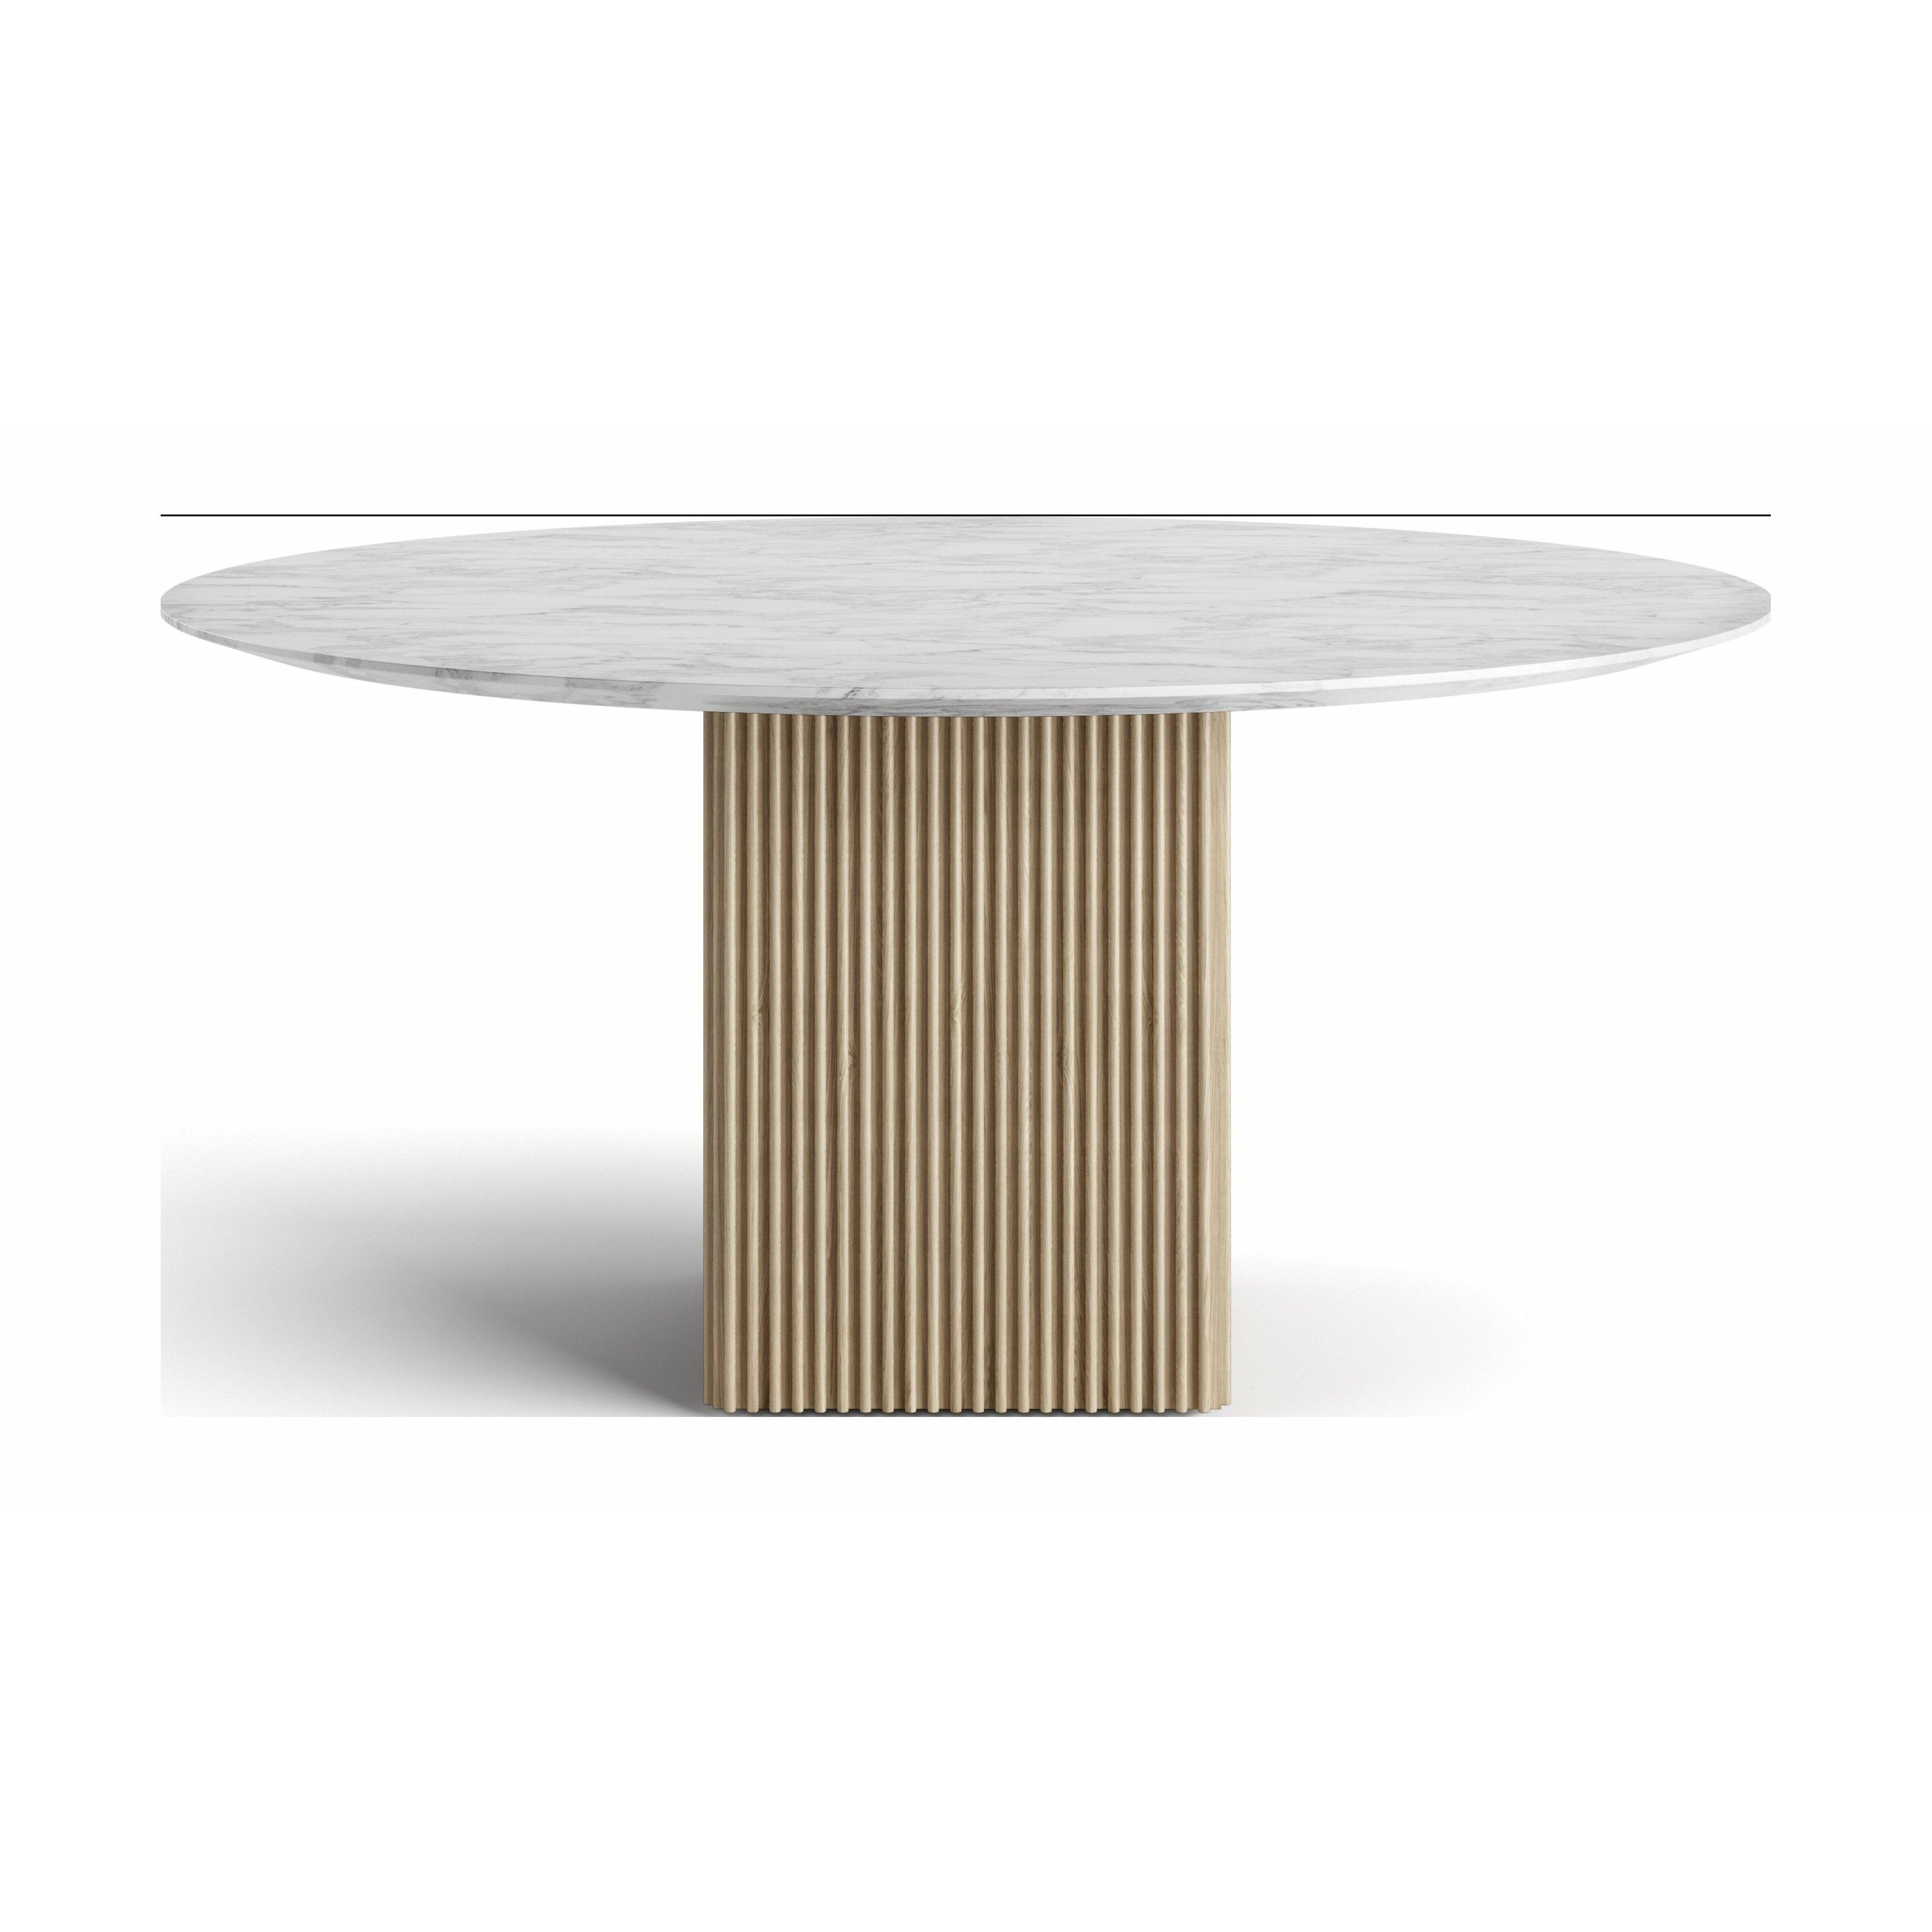 DK3 Tio runda matbord marmor carrara/ek vit oljad, Ø150 cm